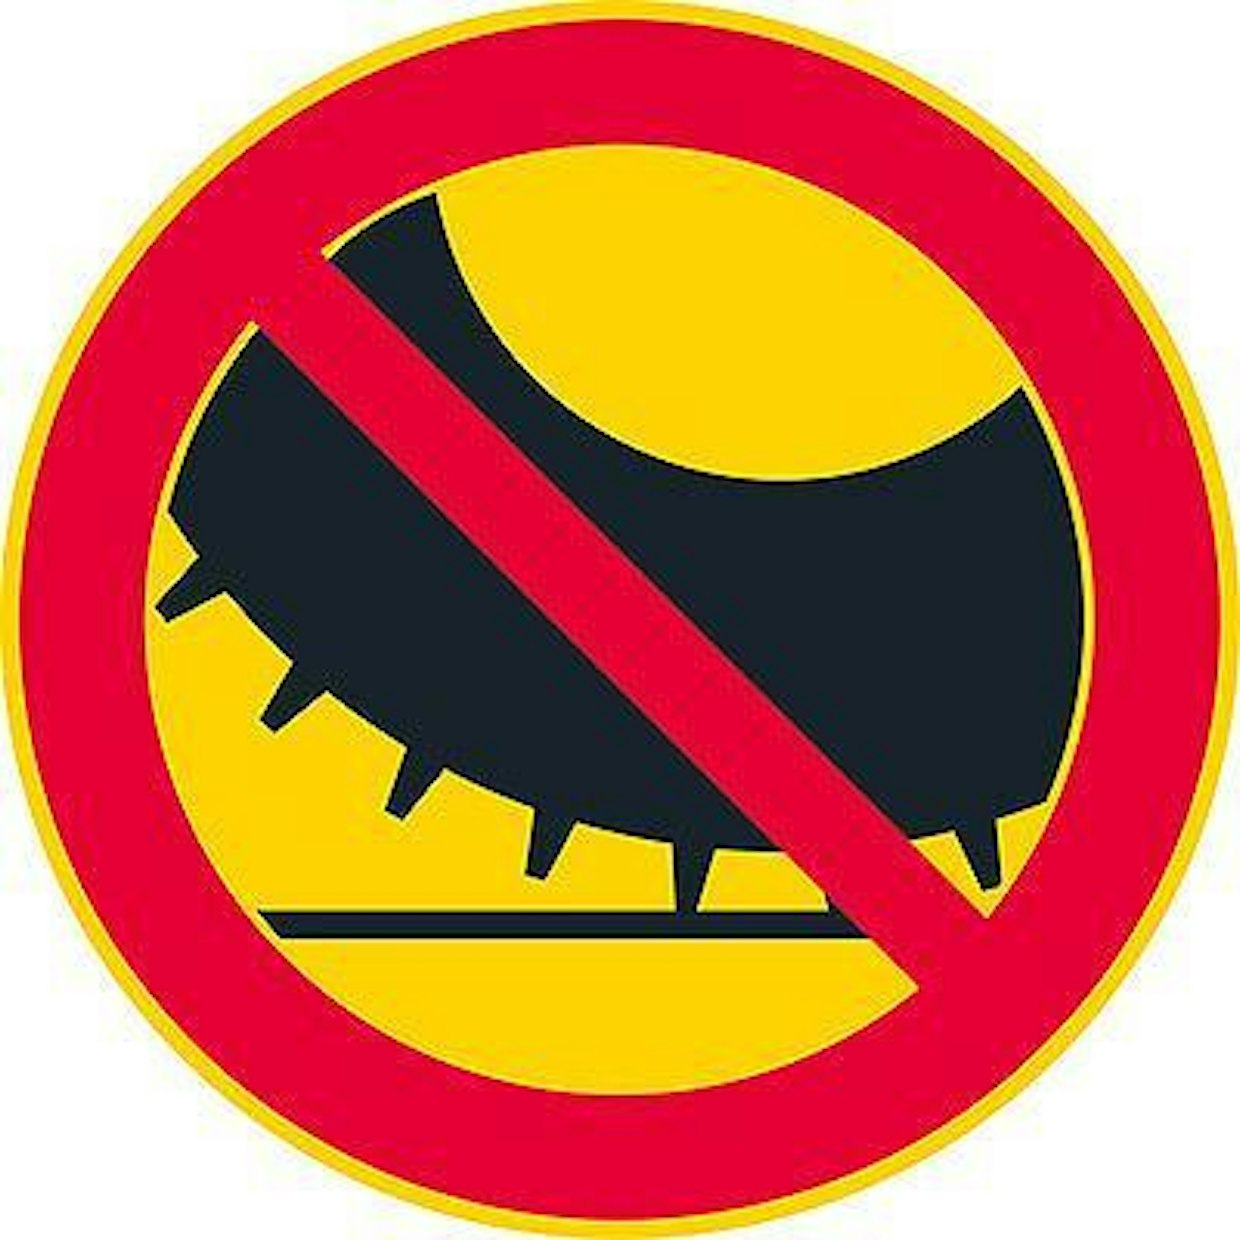 2. Nastarenkailla varustetulla moottorikäyttöisellä ajoneuvolla ajo kielletty -merkki kertoo luonnollisesti nastarengaskiellosta. Merkkiä on käytetty esimerkiksi Ruotsissa ydinkeskusta-alueilla.